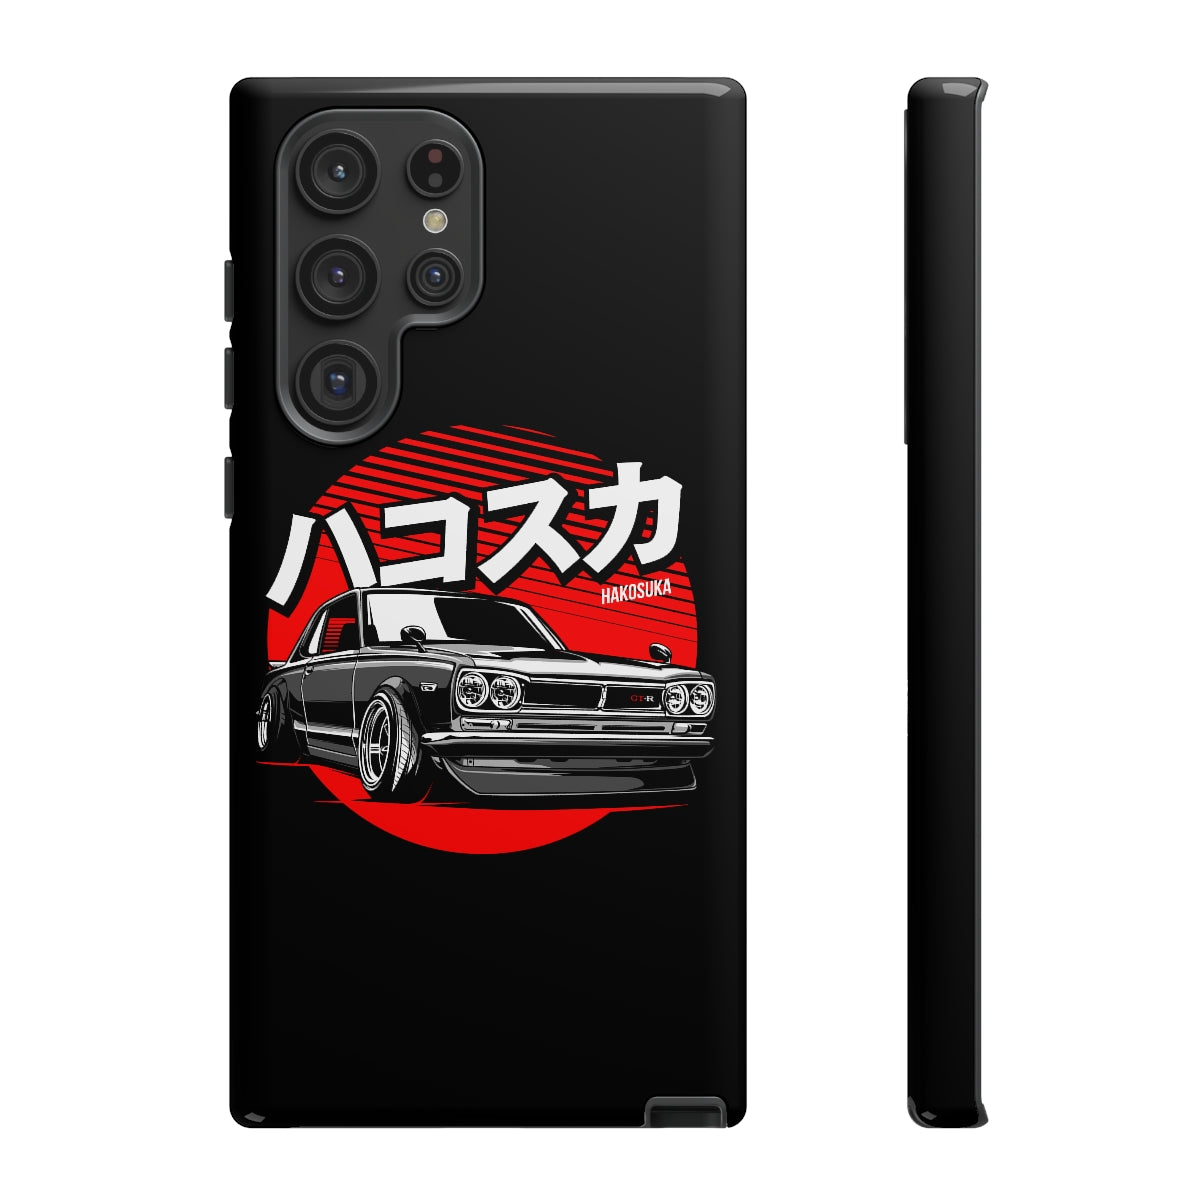 Skyline GTR Hakosuka - Car Phone Case - Samsung Galaxy S22 Ultra